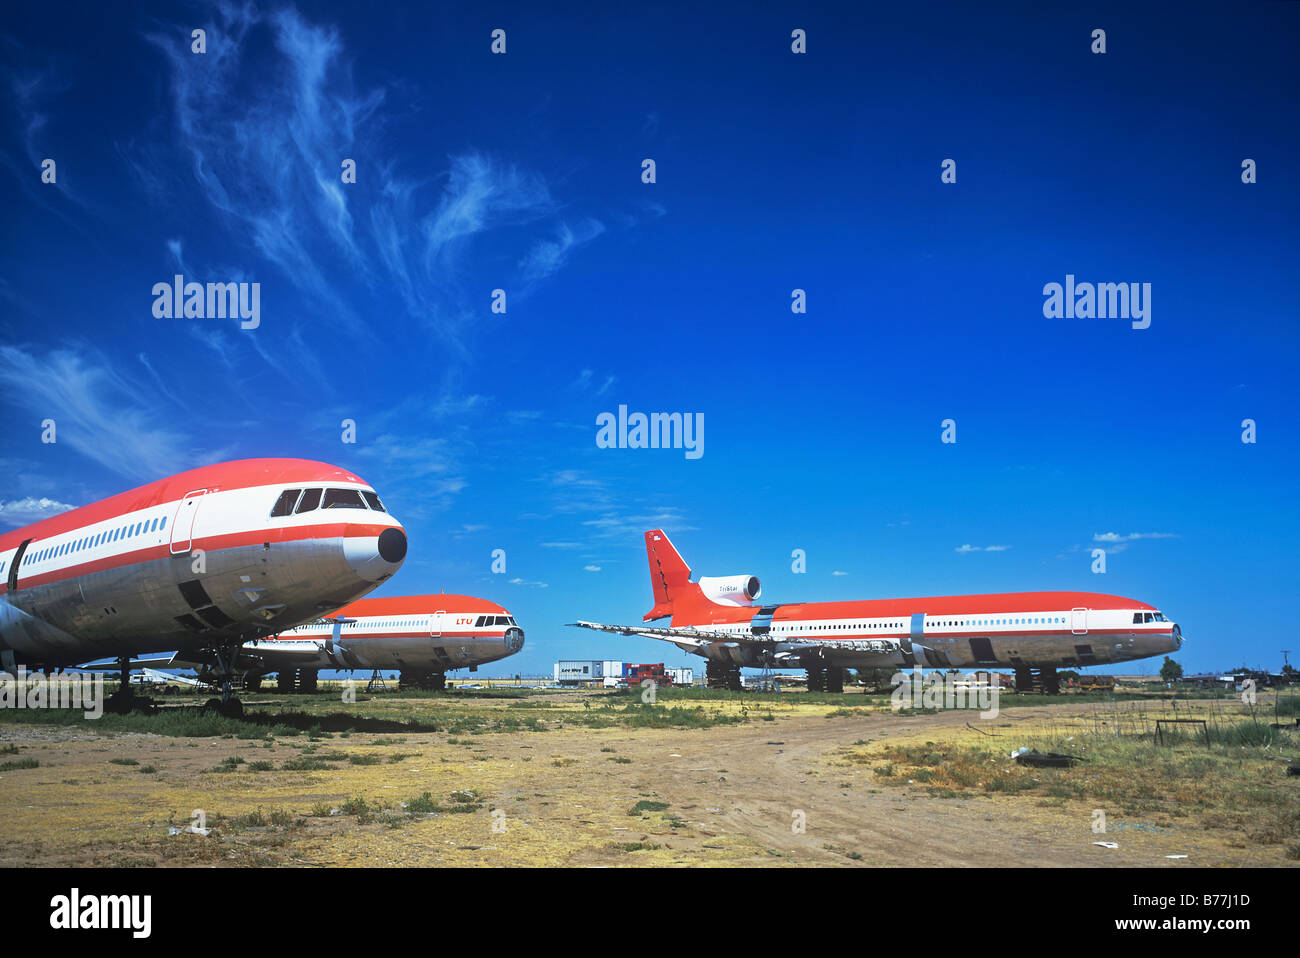 Abandoned aeroplanes at a scrapyard Stock Photo